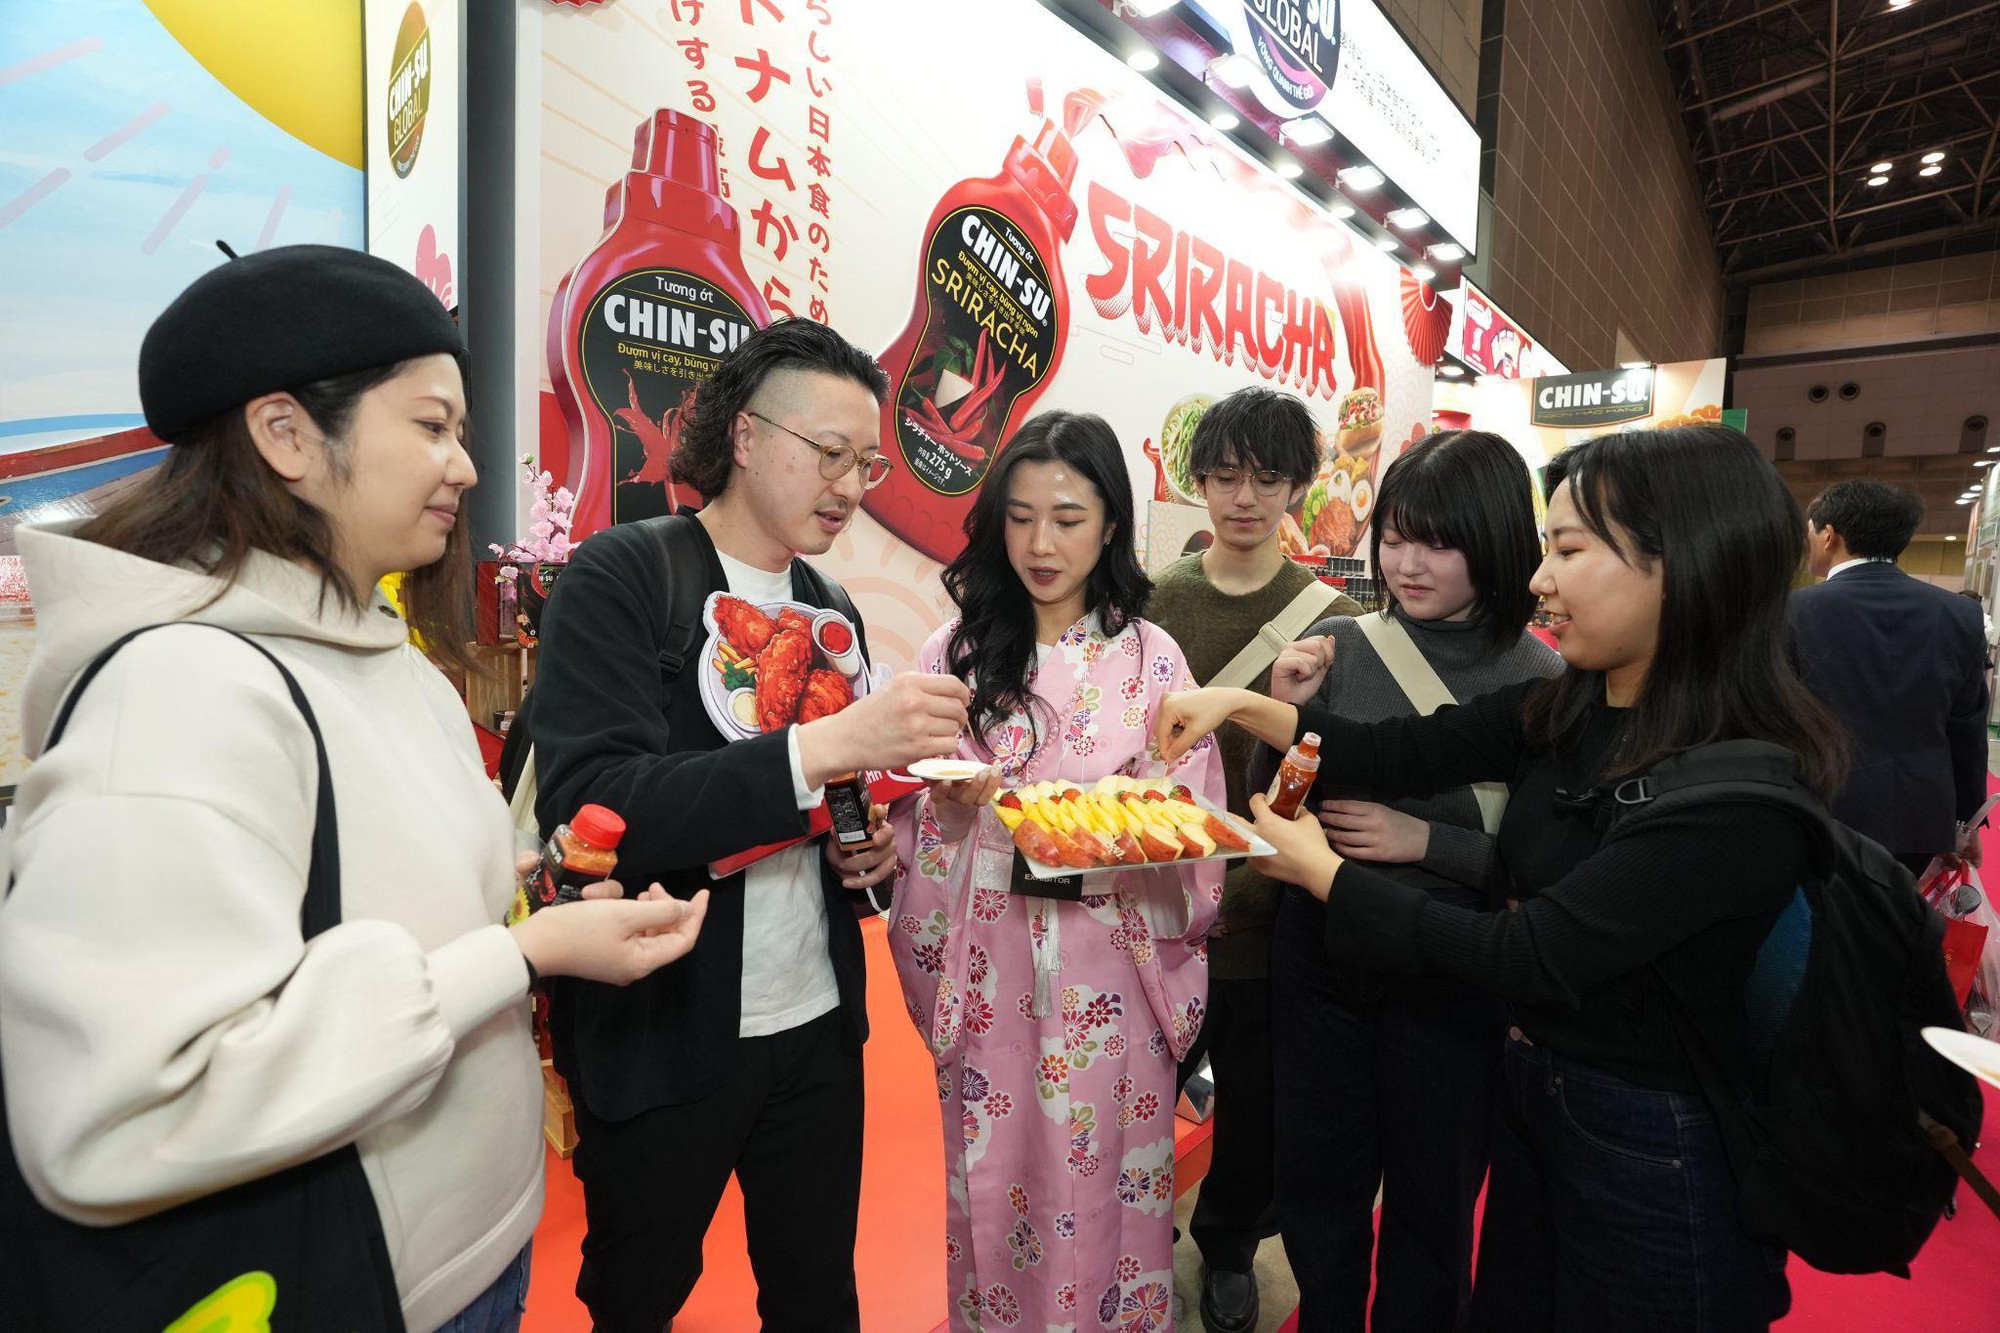 Giới trẻ Nhật hào hứng trải nghiệm lọ muối chấm tôm chua cay Chin-su - Ảnh 2.